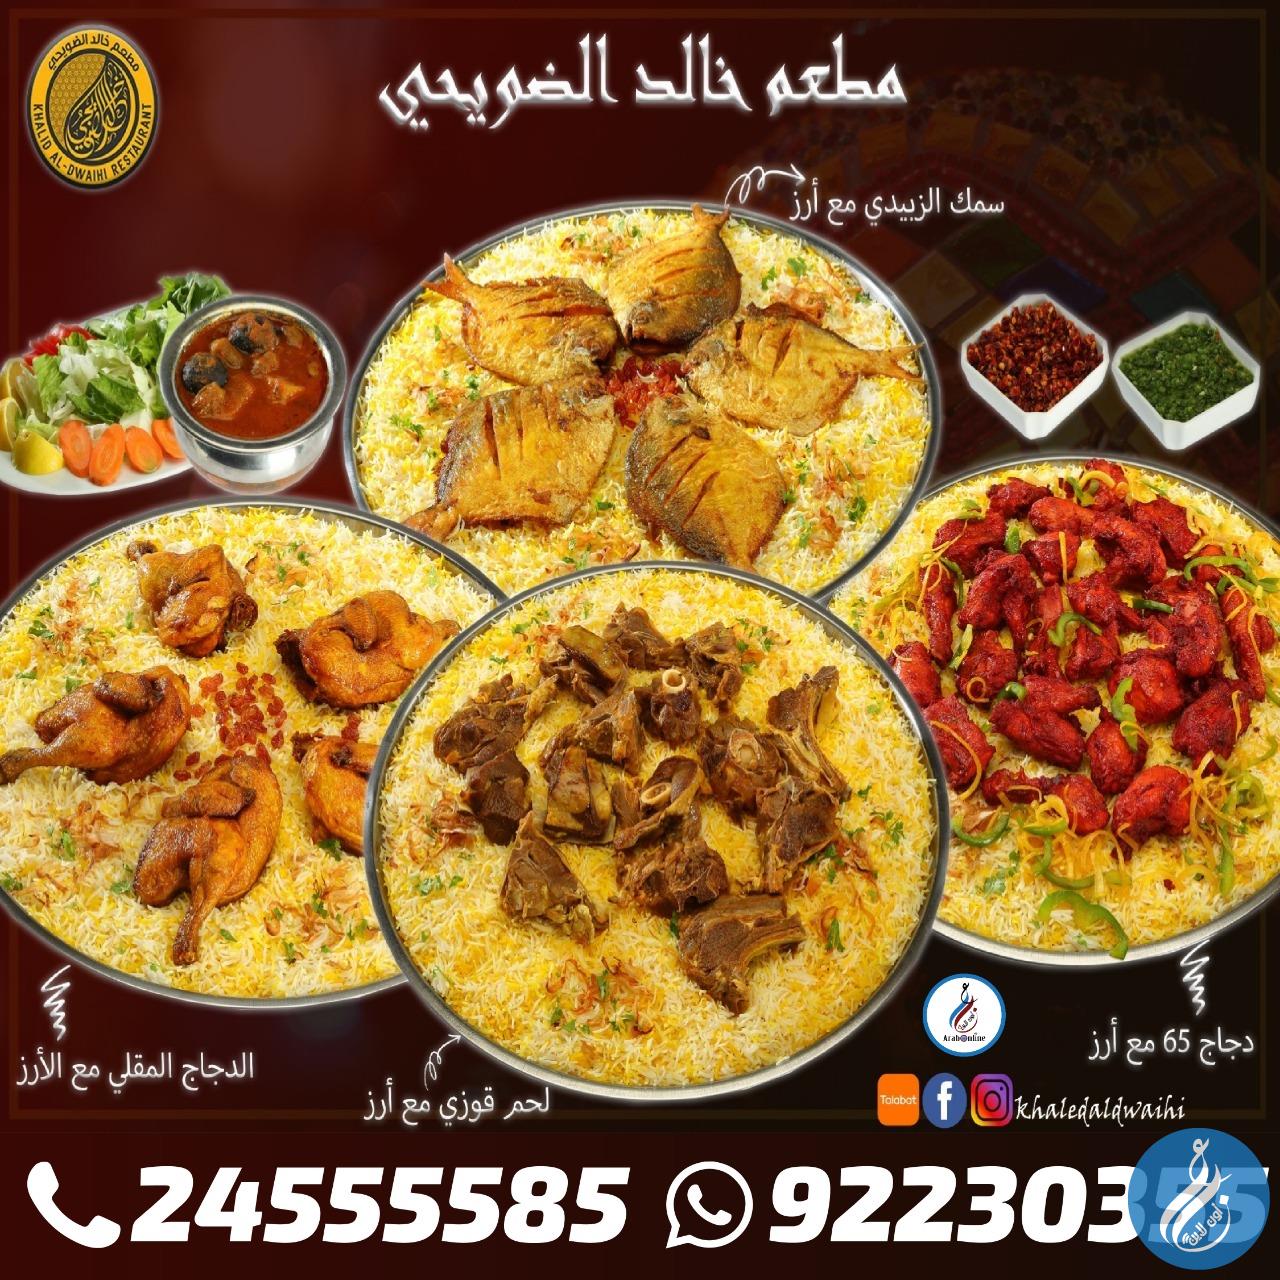 مطعم خالد الضويحي /92230355 